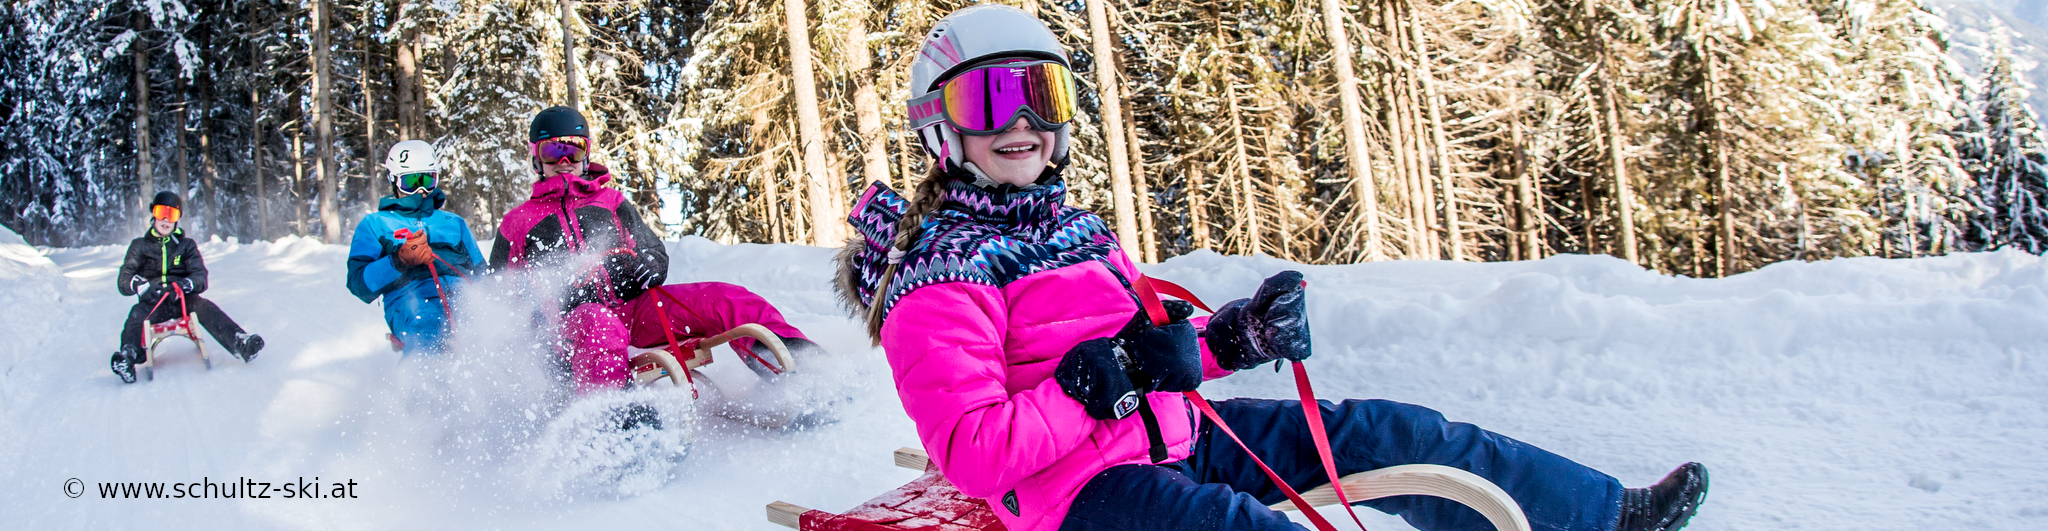 ZILLERTAL – verlängertes Skiwochenende mit 4 Skitagen – in den Weihnachtsferien – ab Mittwoch früh – auch ab Wü 